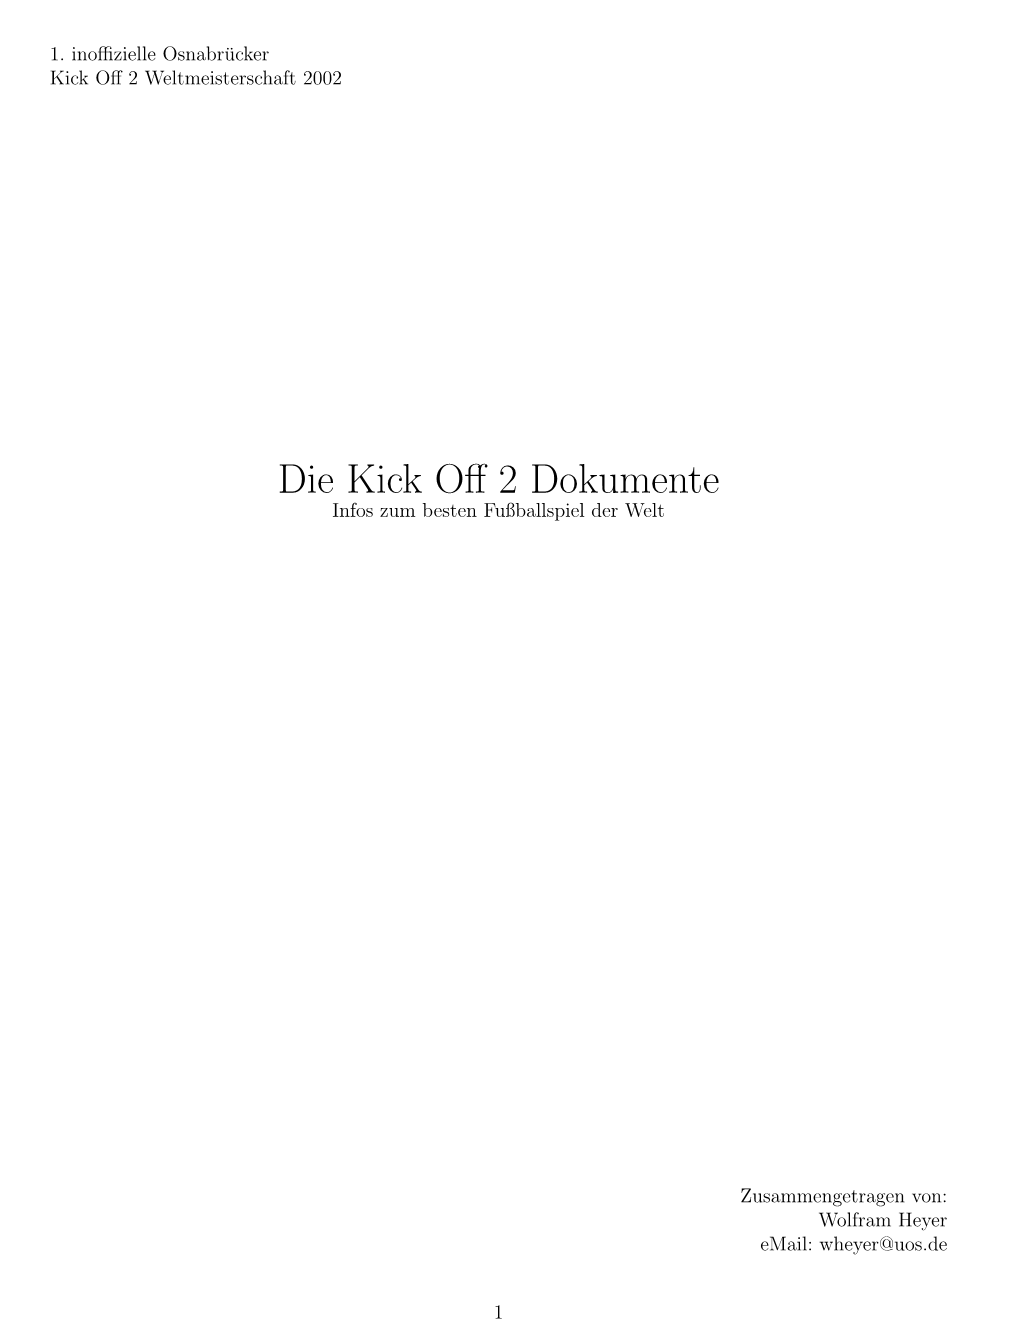 Die Kick Off 2 Dokumente